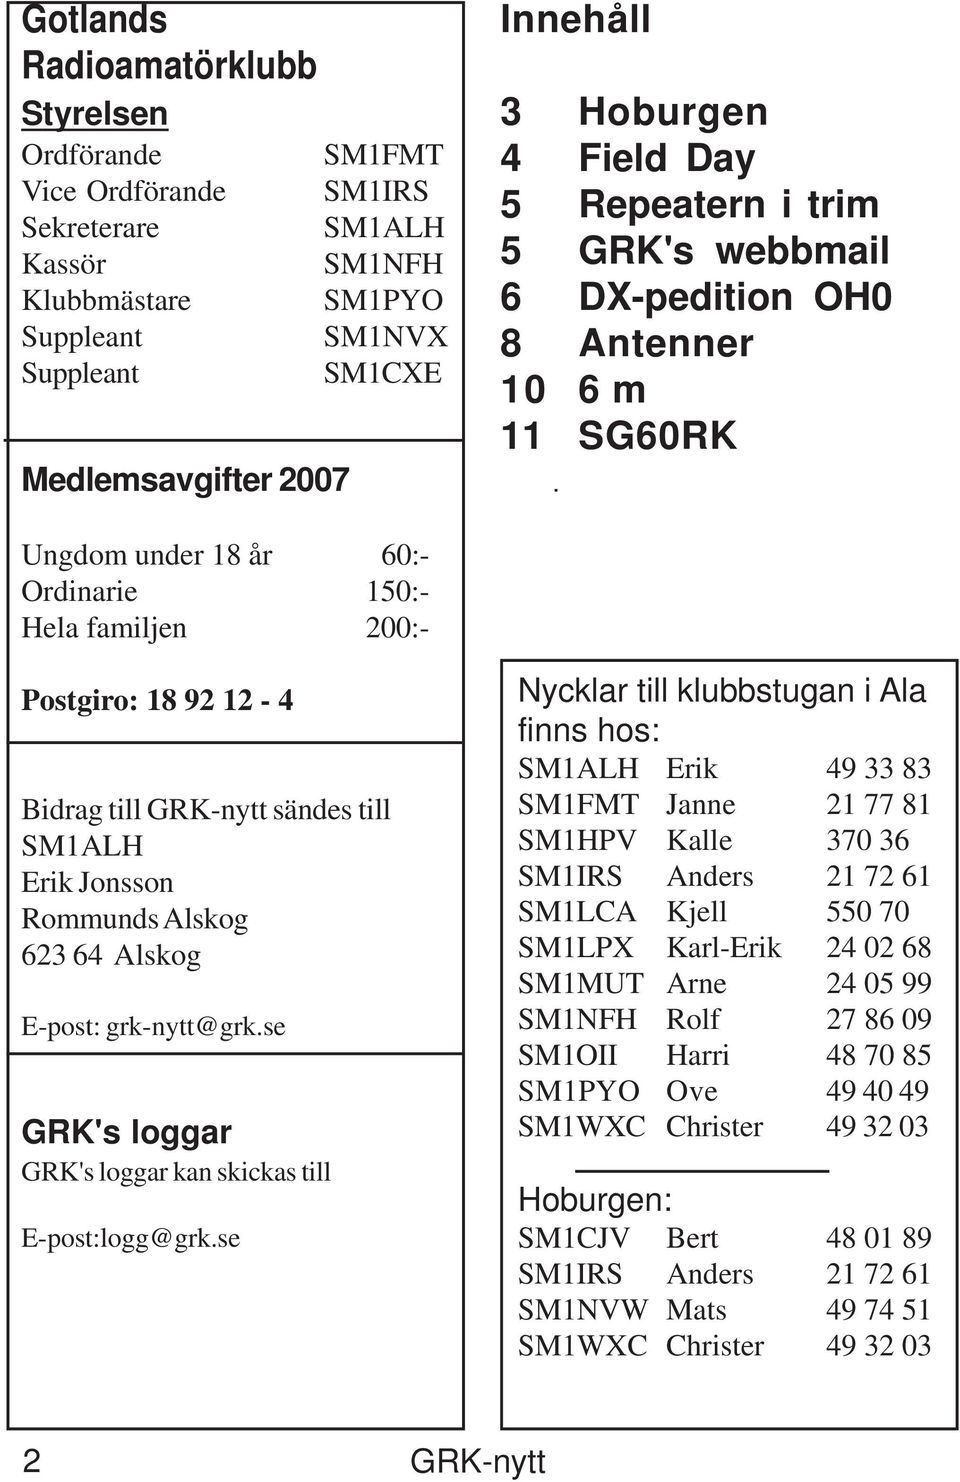 GRK-nytt sändes till SM1ALH Erik Jonsson Rommunds Alskog 623 64 Alskog E-post: grk-nytt@grk.se GRK's loggar GRK's loggar kan skickas till E-post:logg@grk.